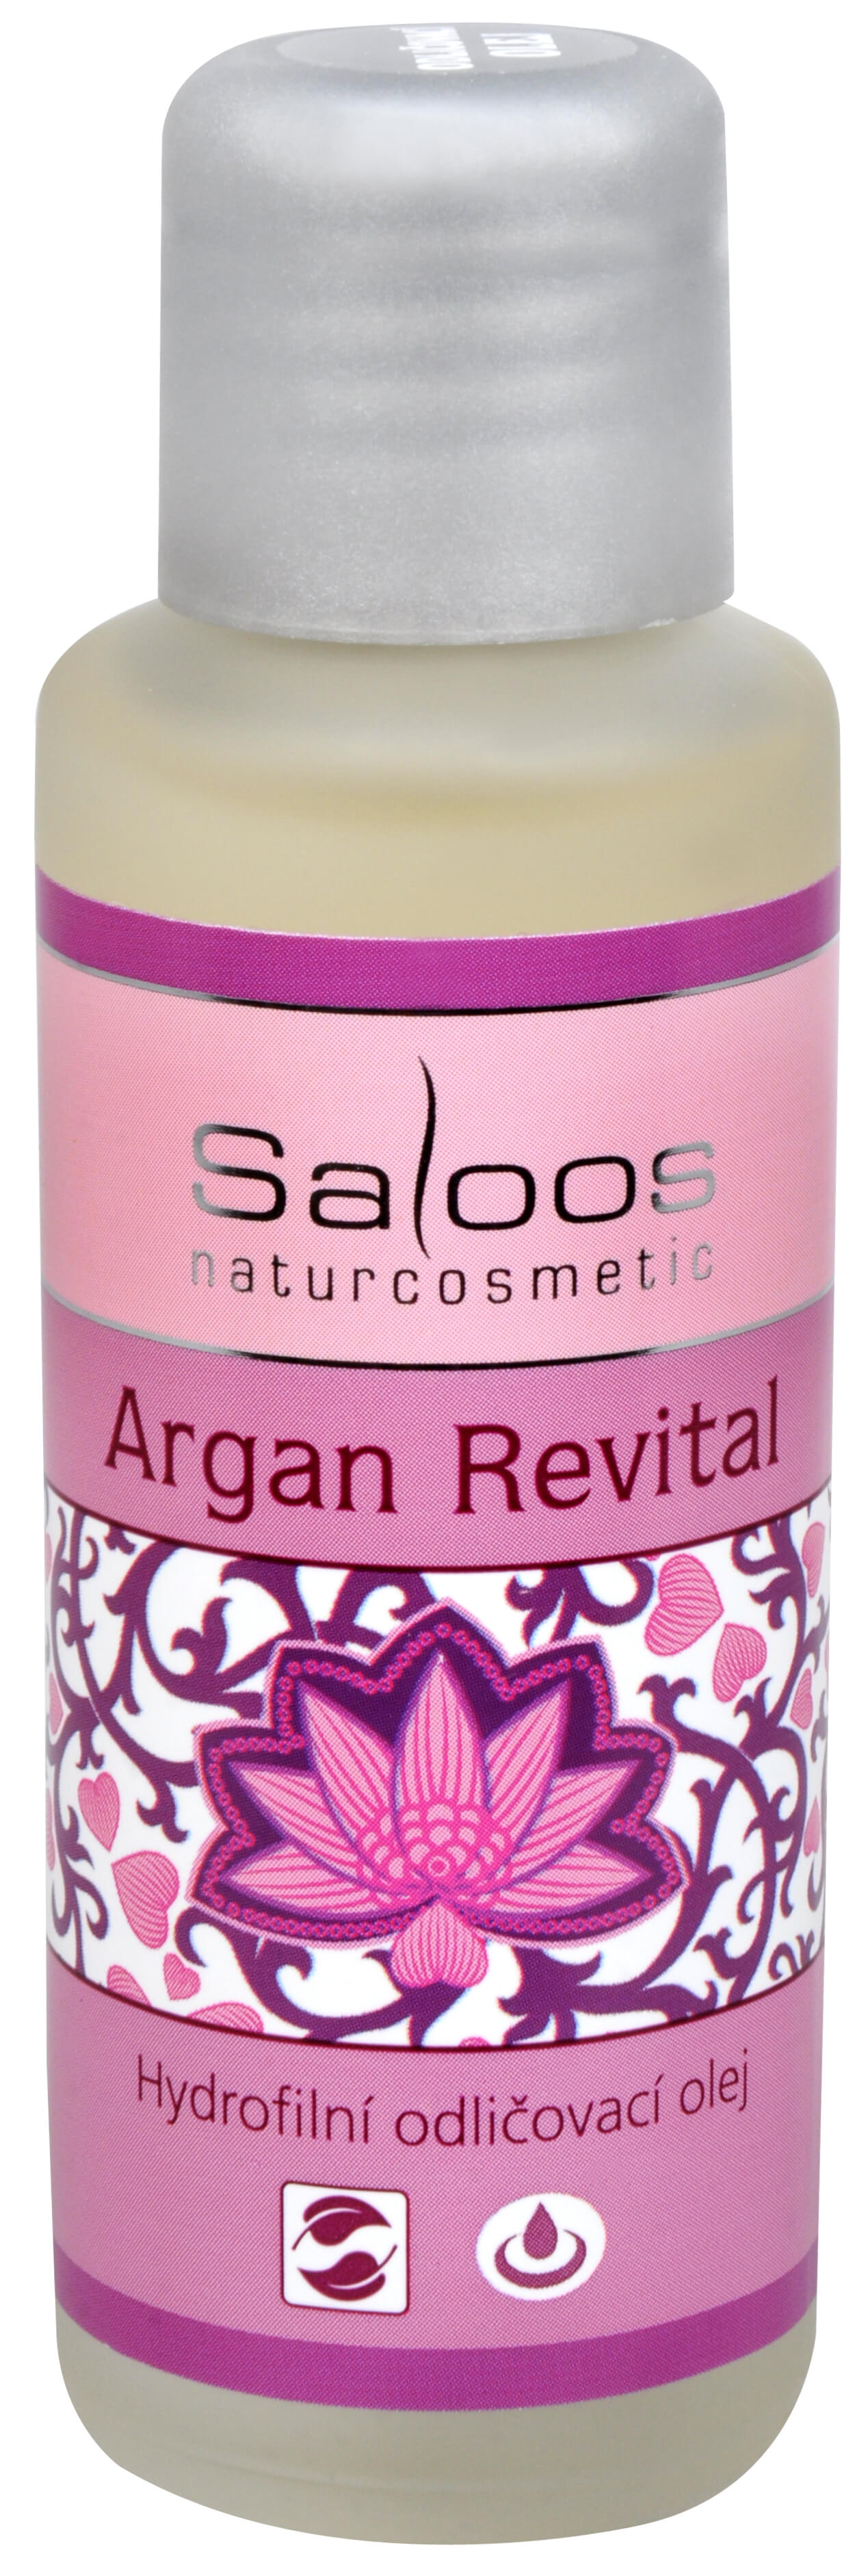 Zobrazit detail výrobku Saloos Hydrofilní odličovací olej - Argan Revital 50 ml